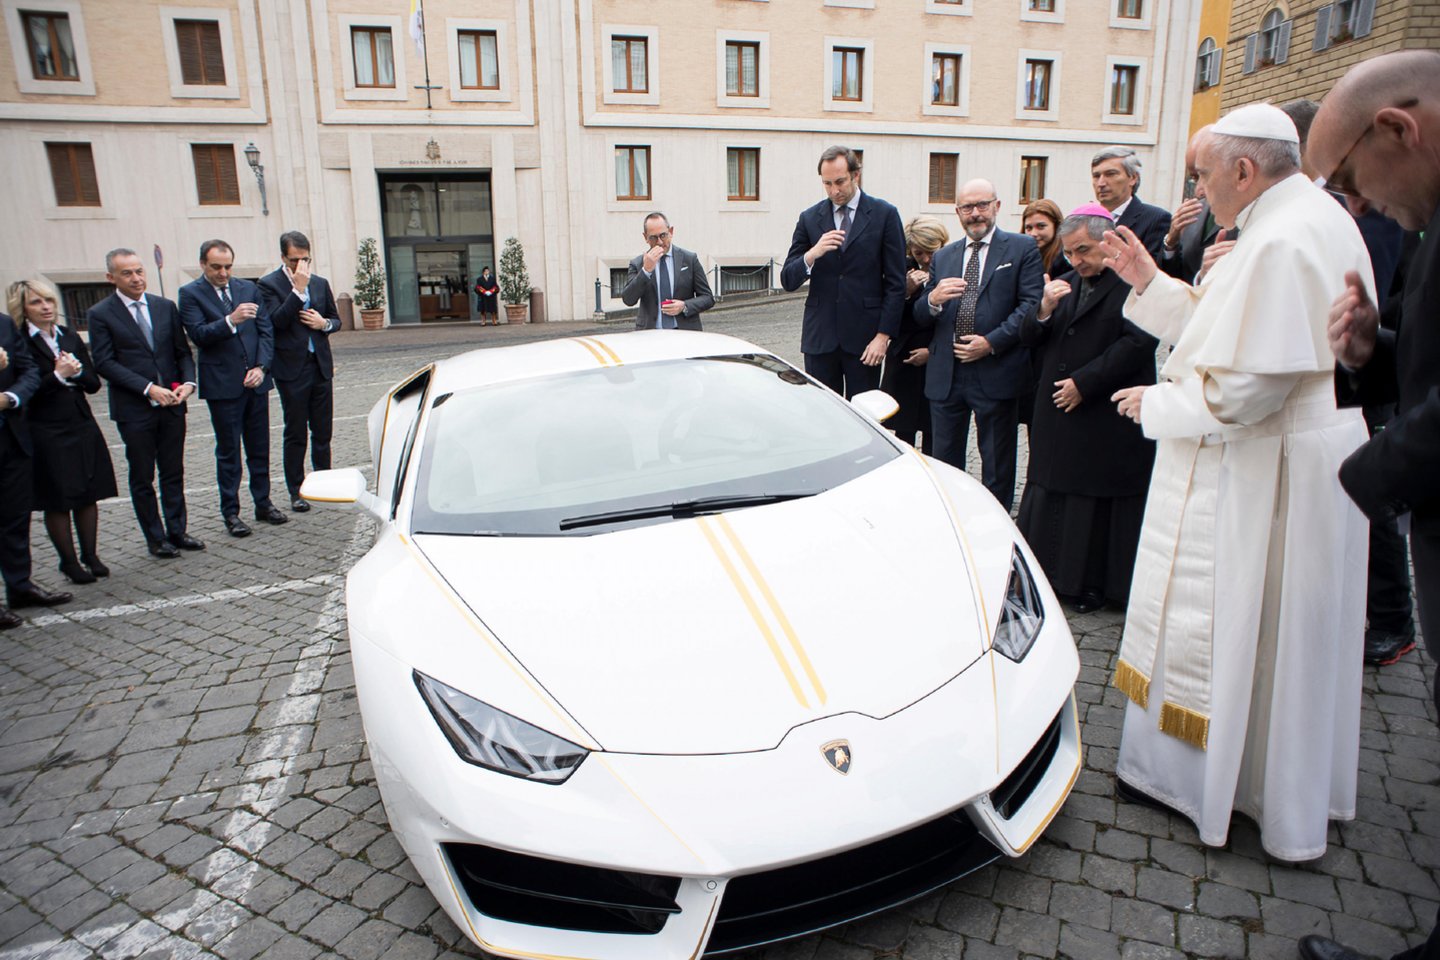 Popiežiaus „Lamborghini“ aukcione parduotas už beveik 900 000 eurų. <br>Reuters/Scanpix nuotr.